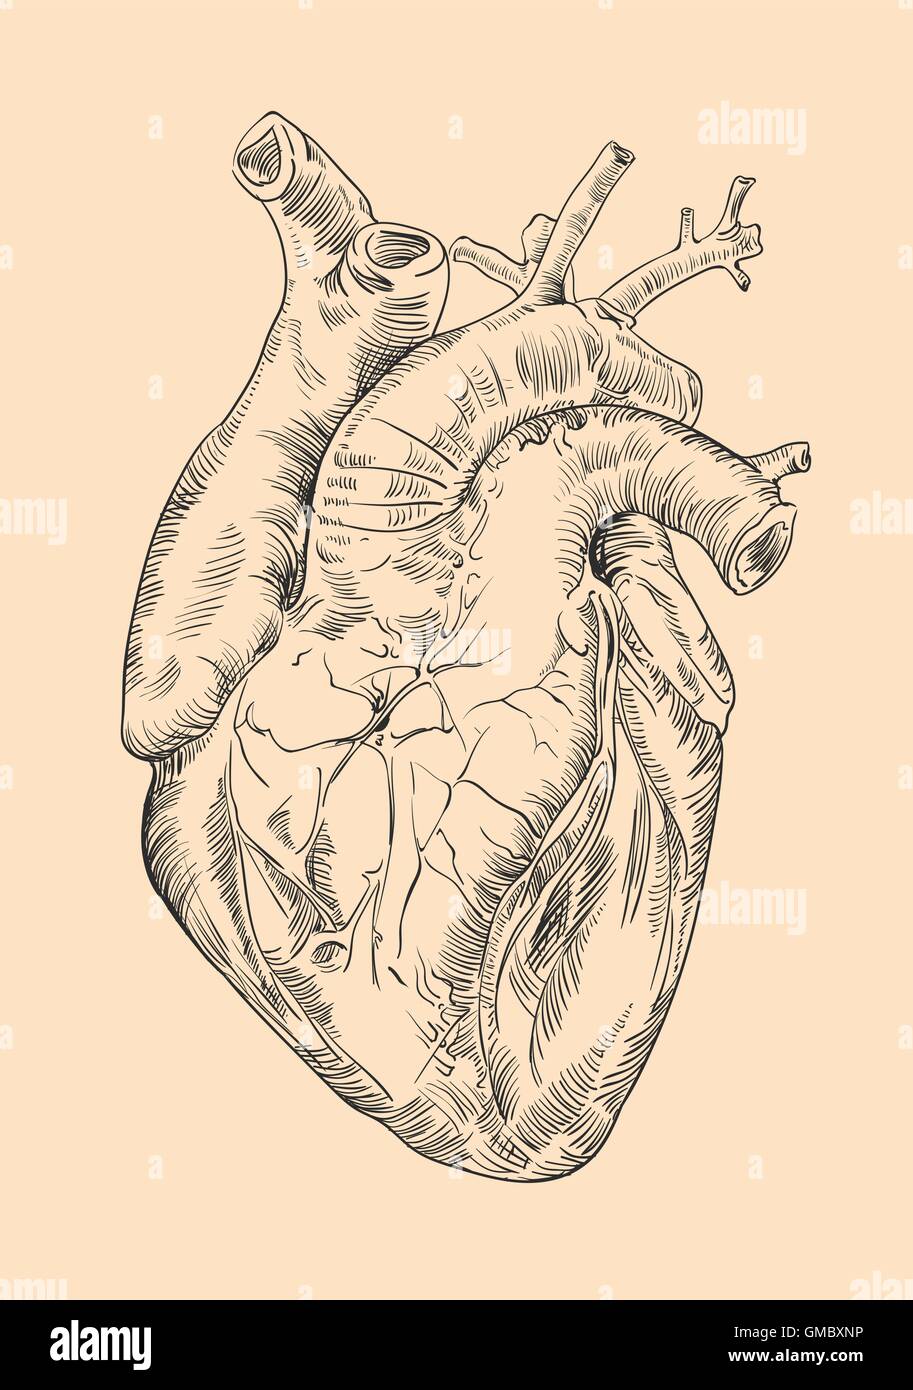 Disegno del cuore umano con fiori Illustrazione Vettoriale